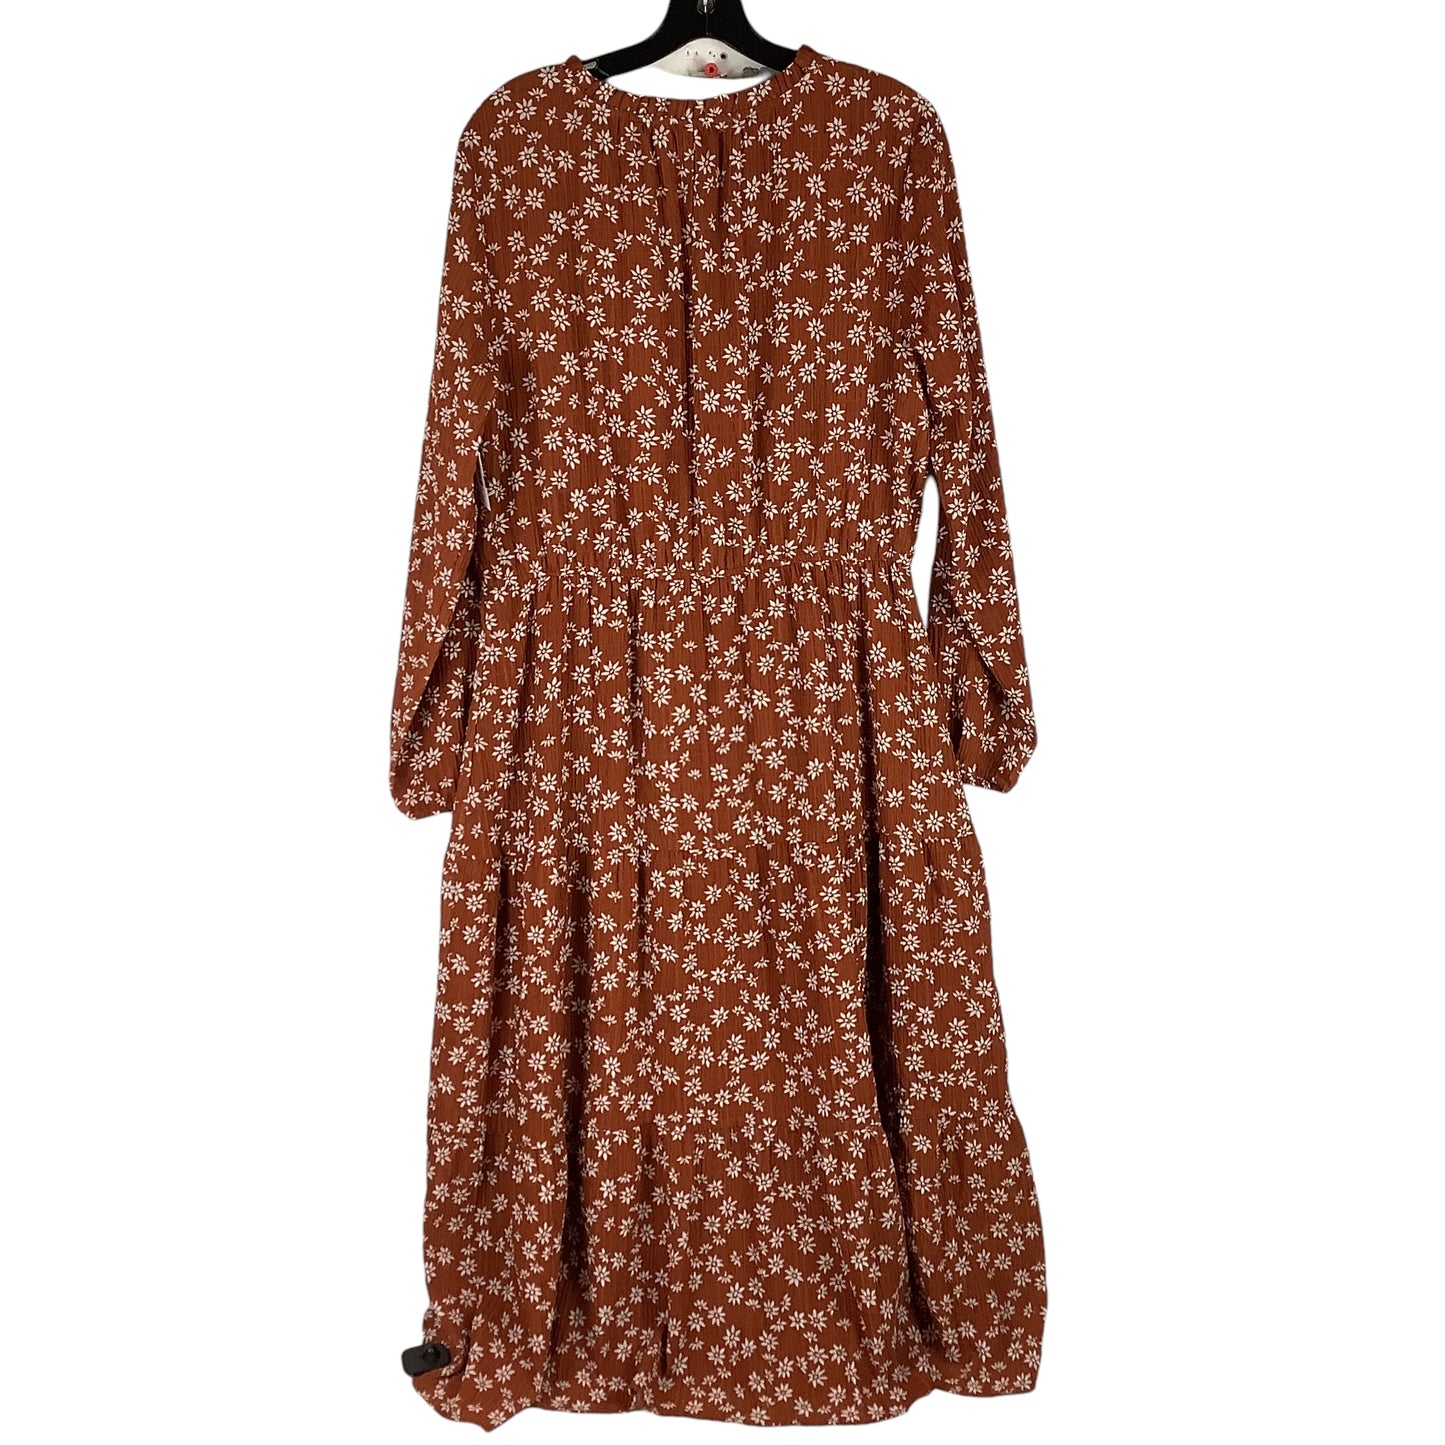 Dress Casual Maxi By Loft  Size: L